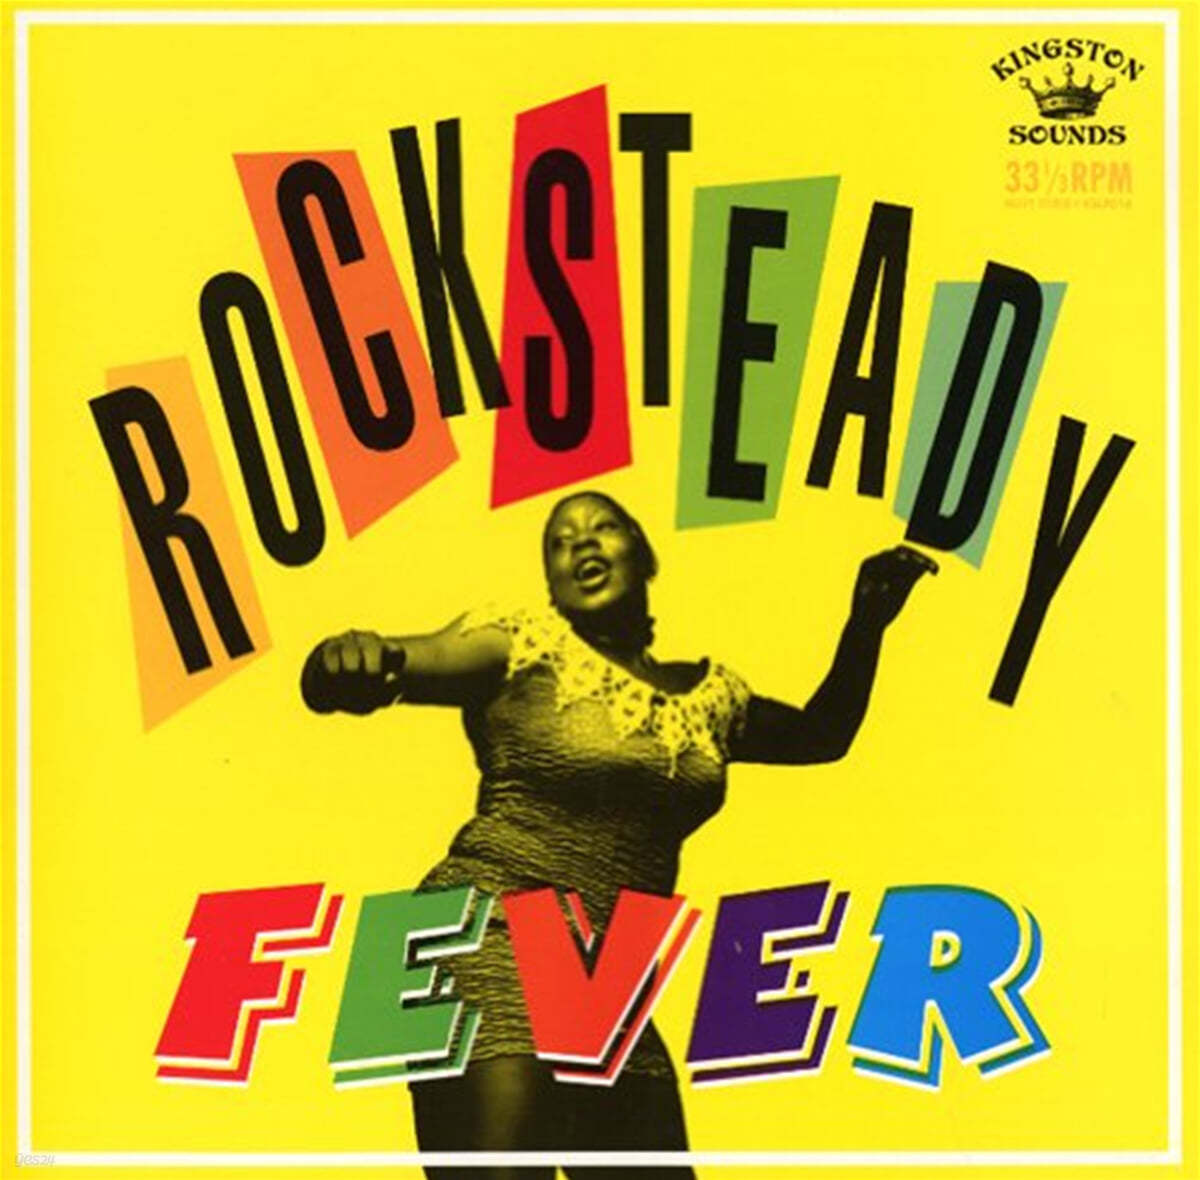 락스테디 피버 - 스카 리듬 음악 컴필레이션 (Rocksteady Fever) [LP] 